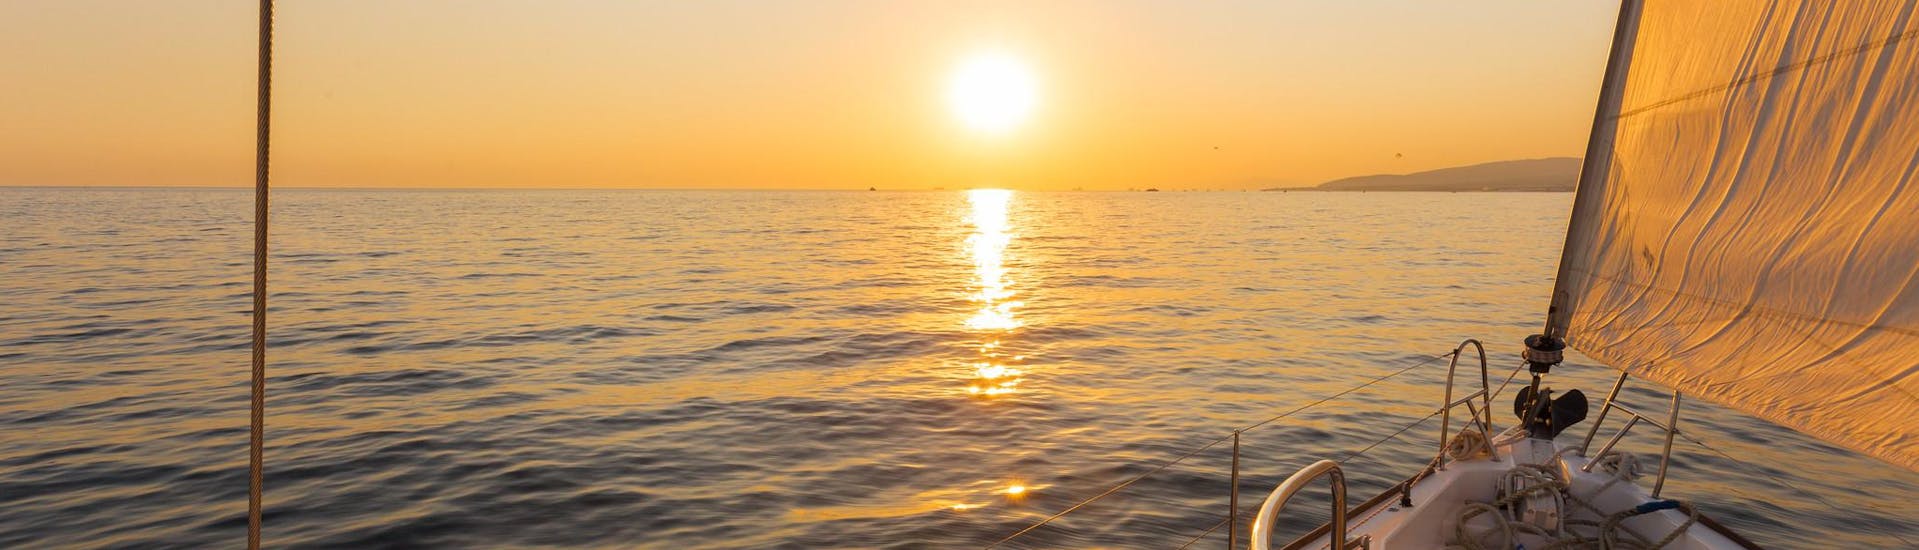 Le soleil se lève lors d'une promenade en bateau au lever du soleil.